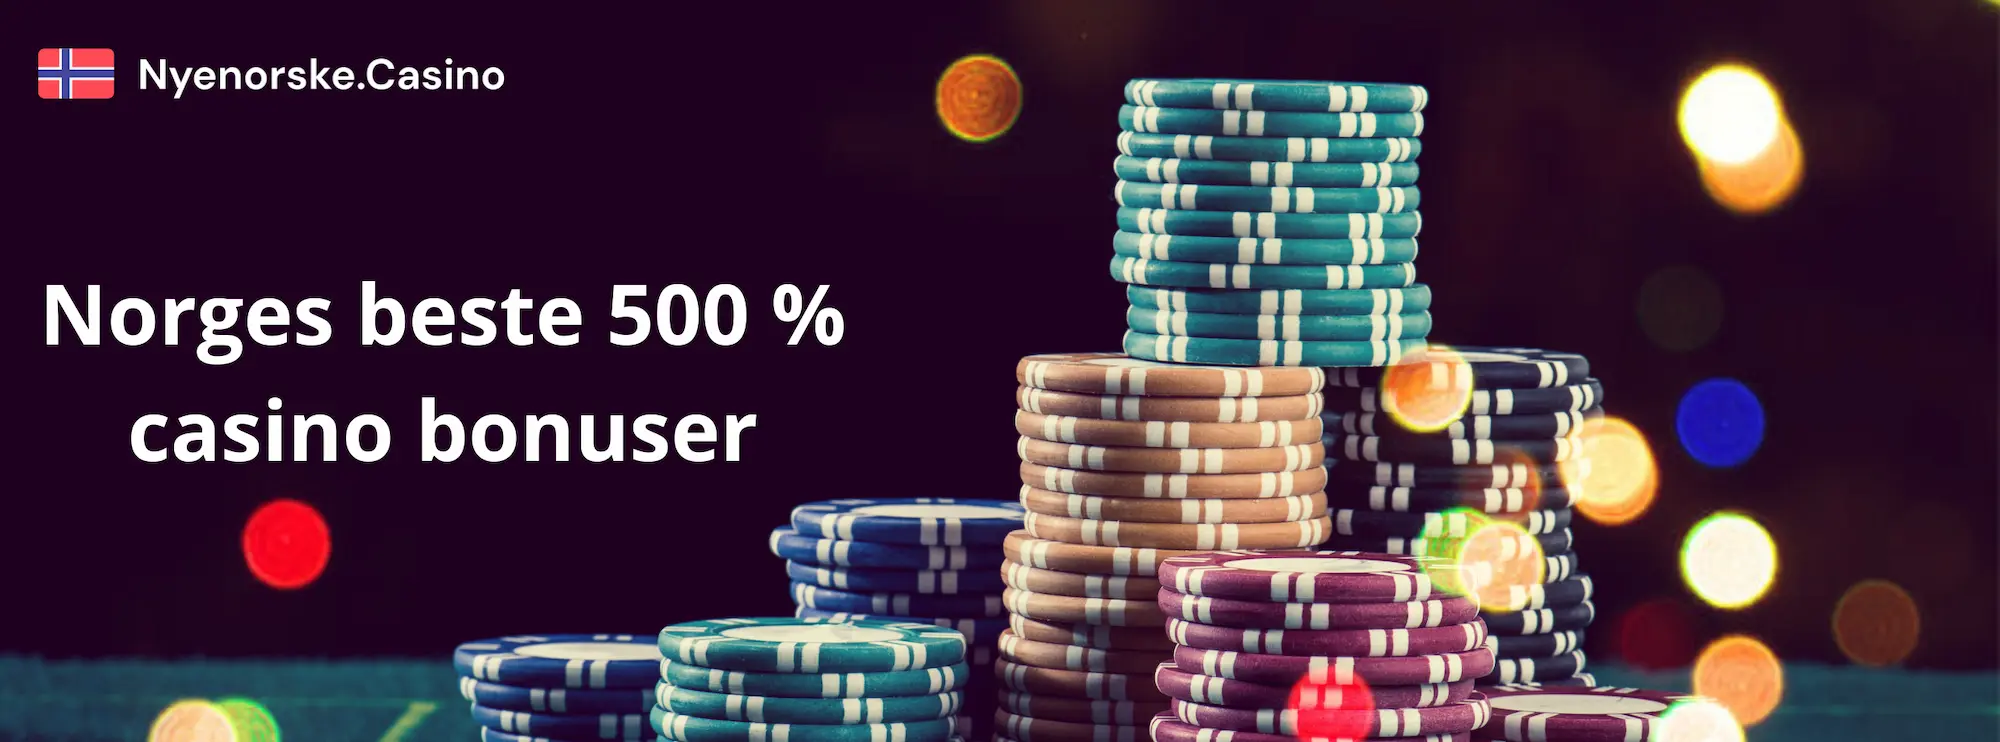 Hva er en 500% casino bonus?